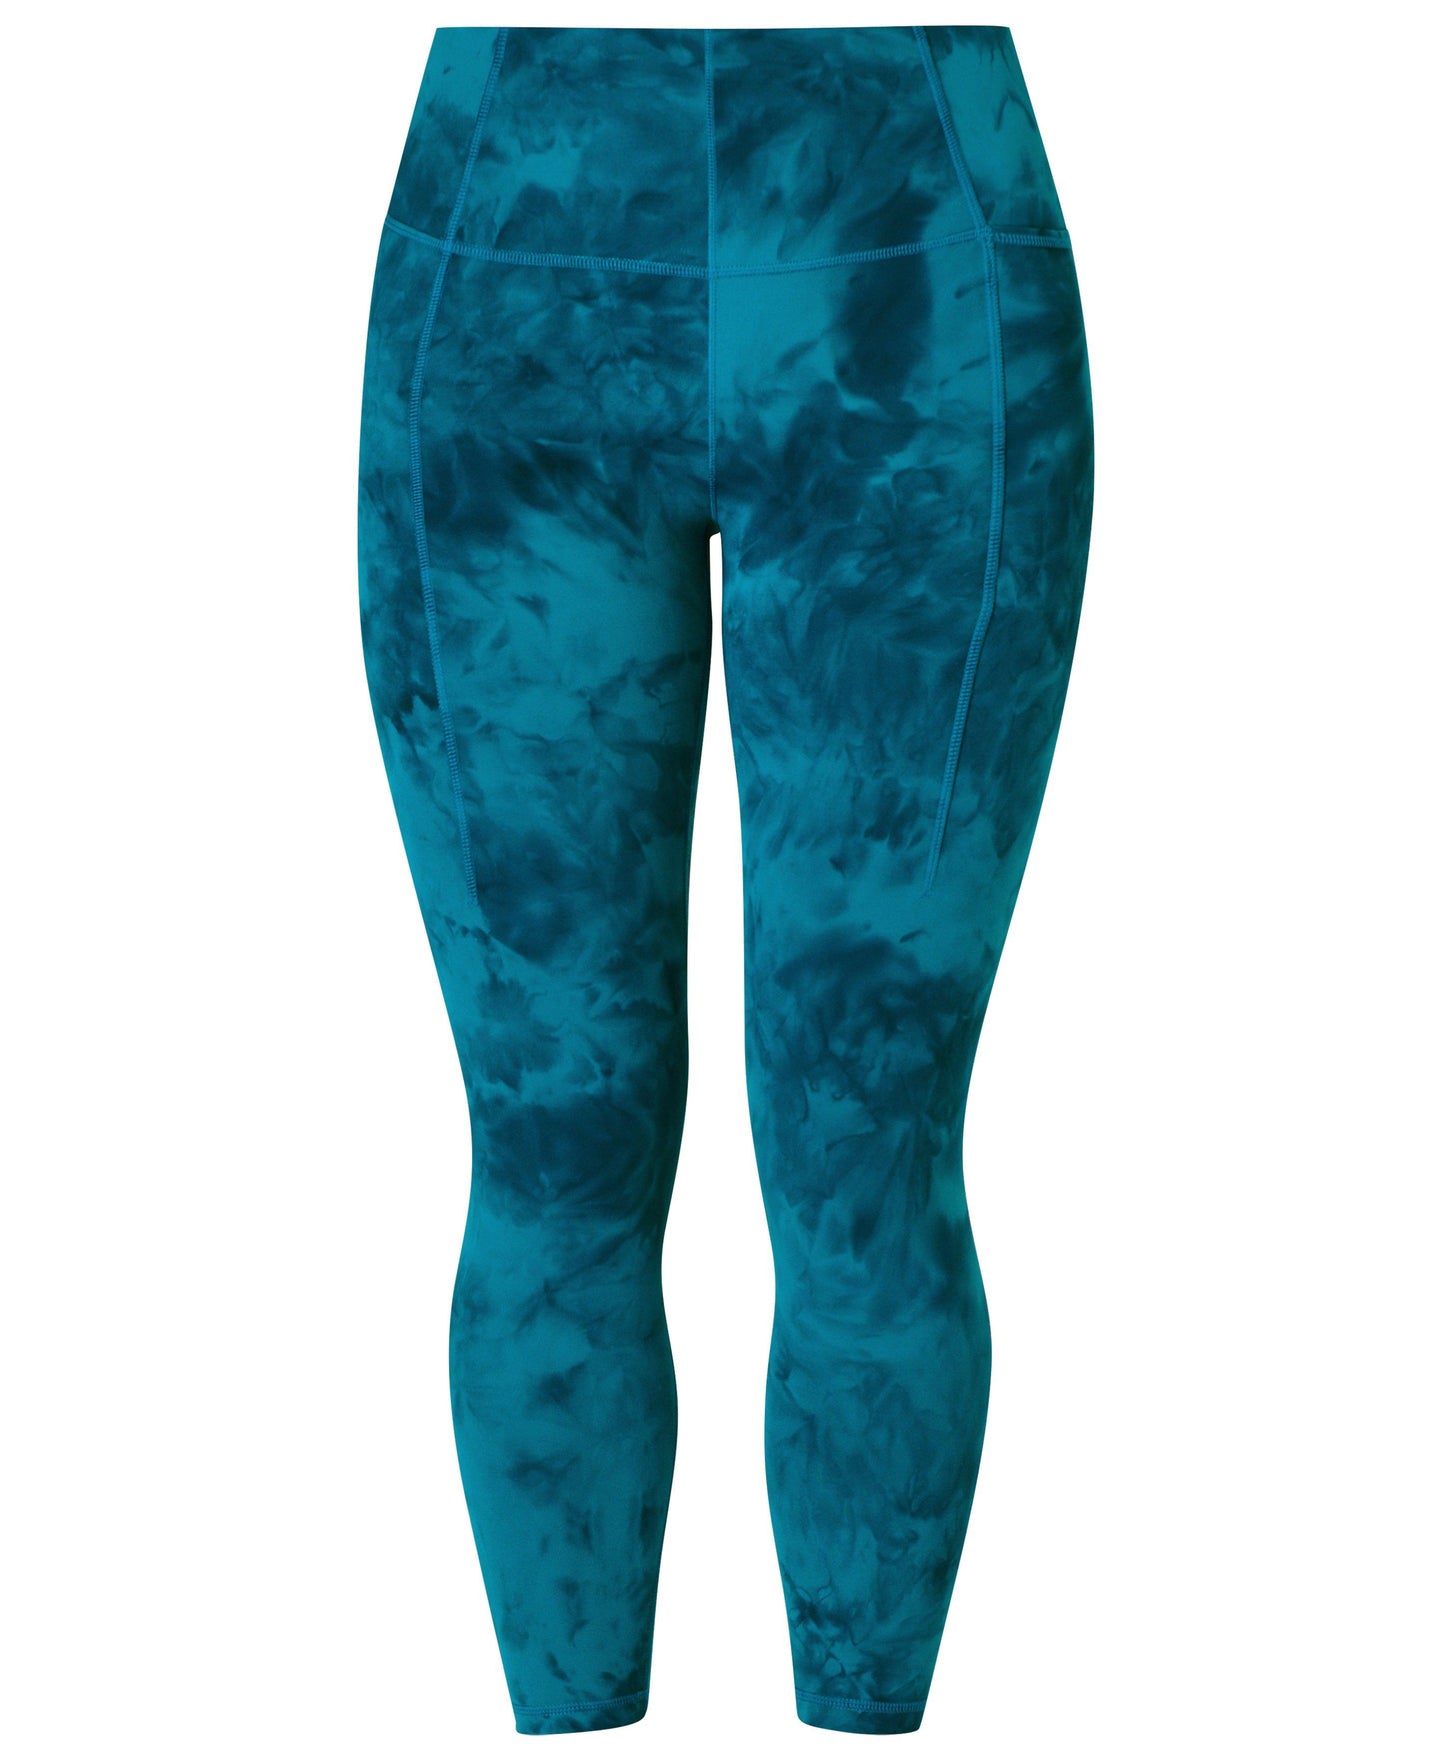 Super Soft 7/8 Yoga Leggings Sb6916a 7878 Reef-Teal-Blue-Spray